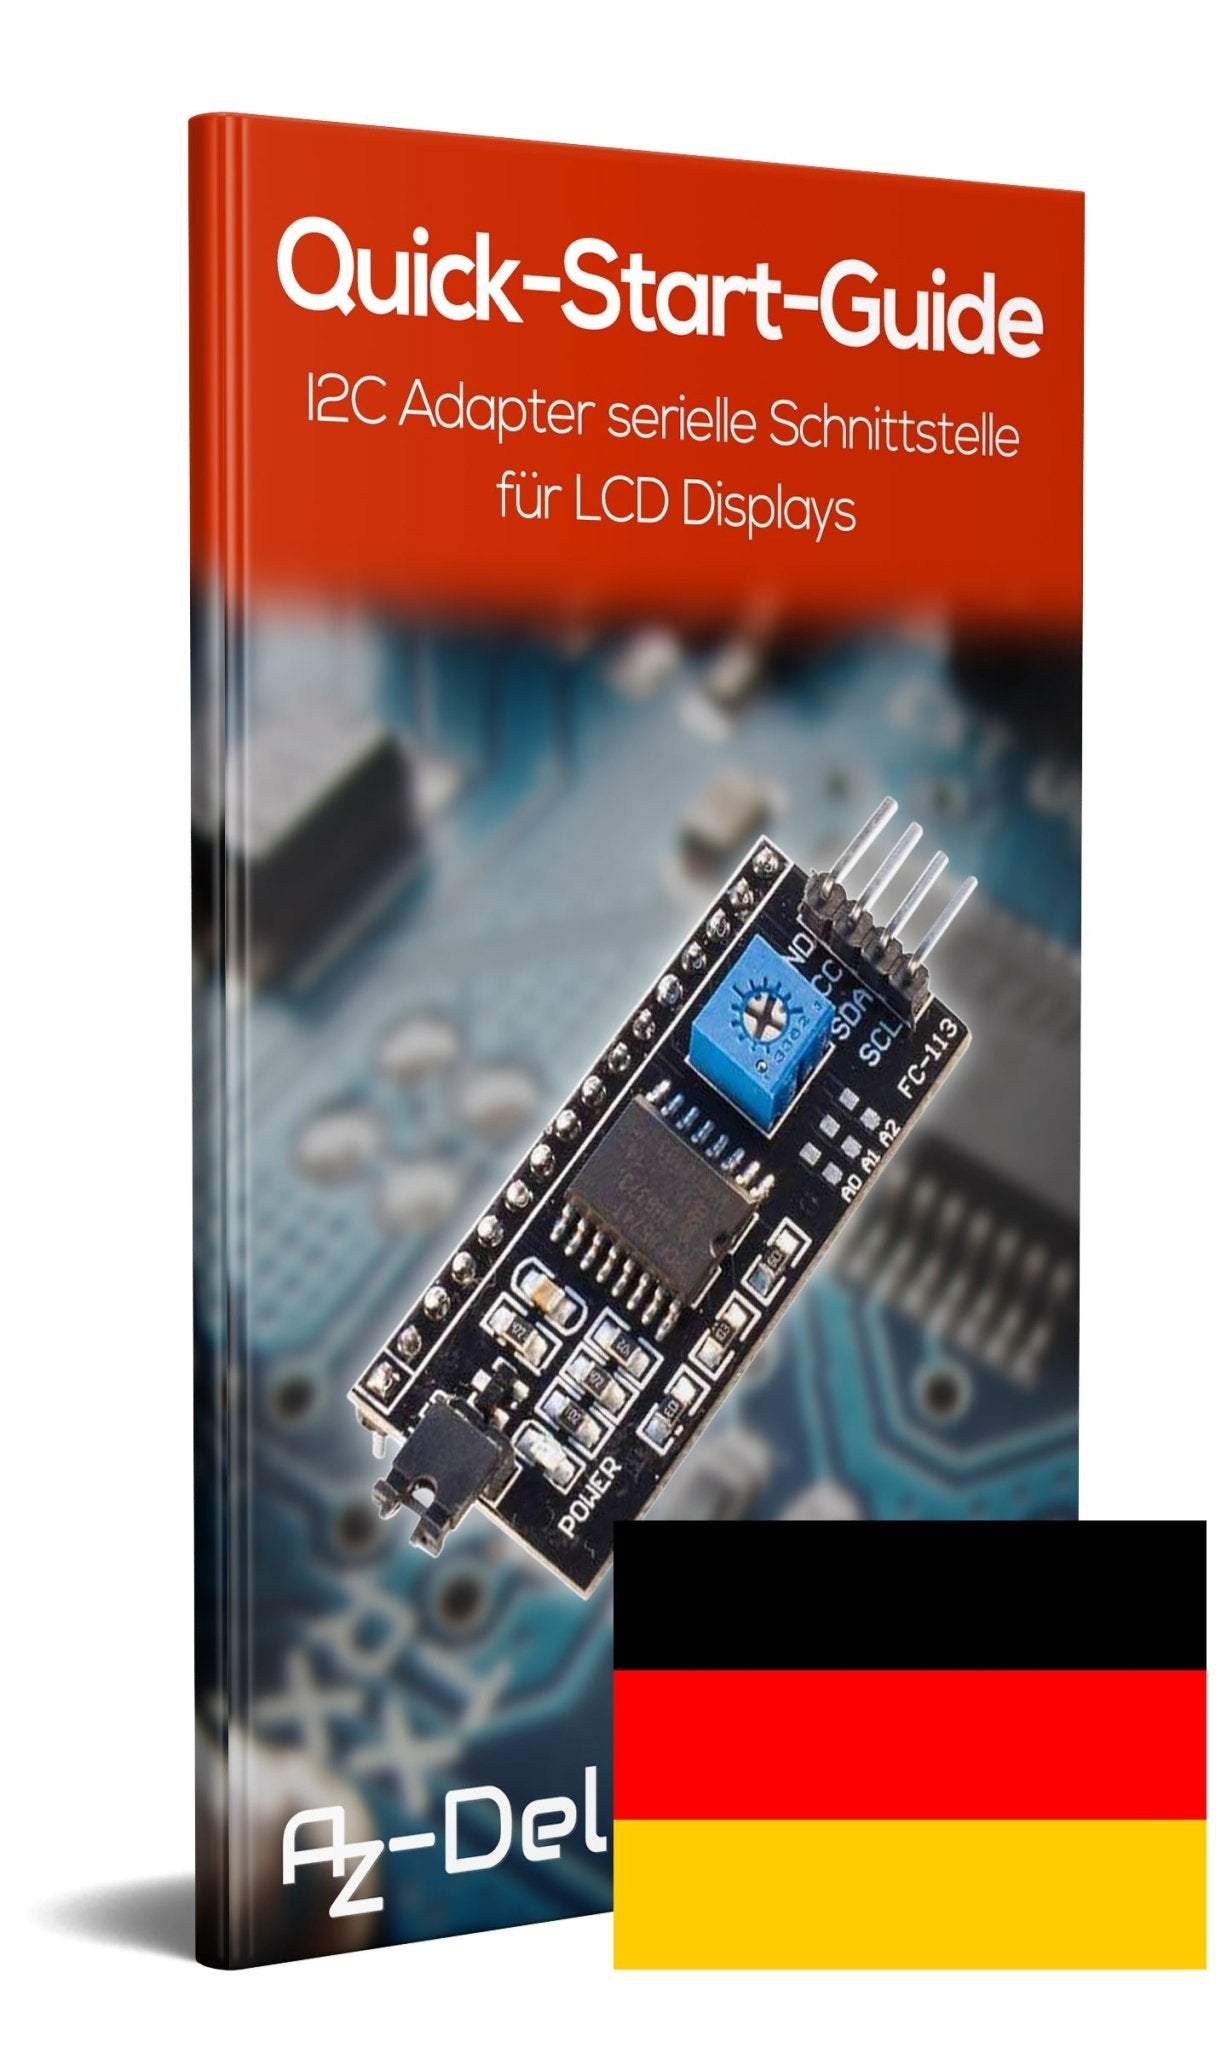 I2C IIC Adapter serielle Schnittstelle für LCD Display 1602 und 2004 - AZ-Delivery